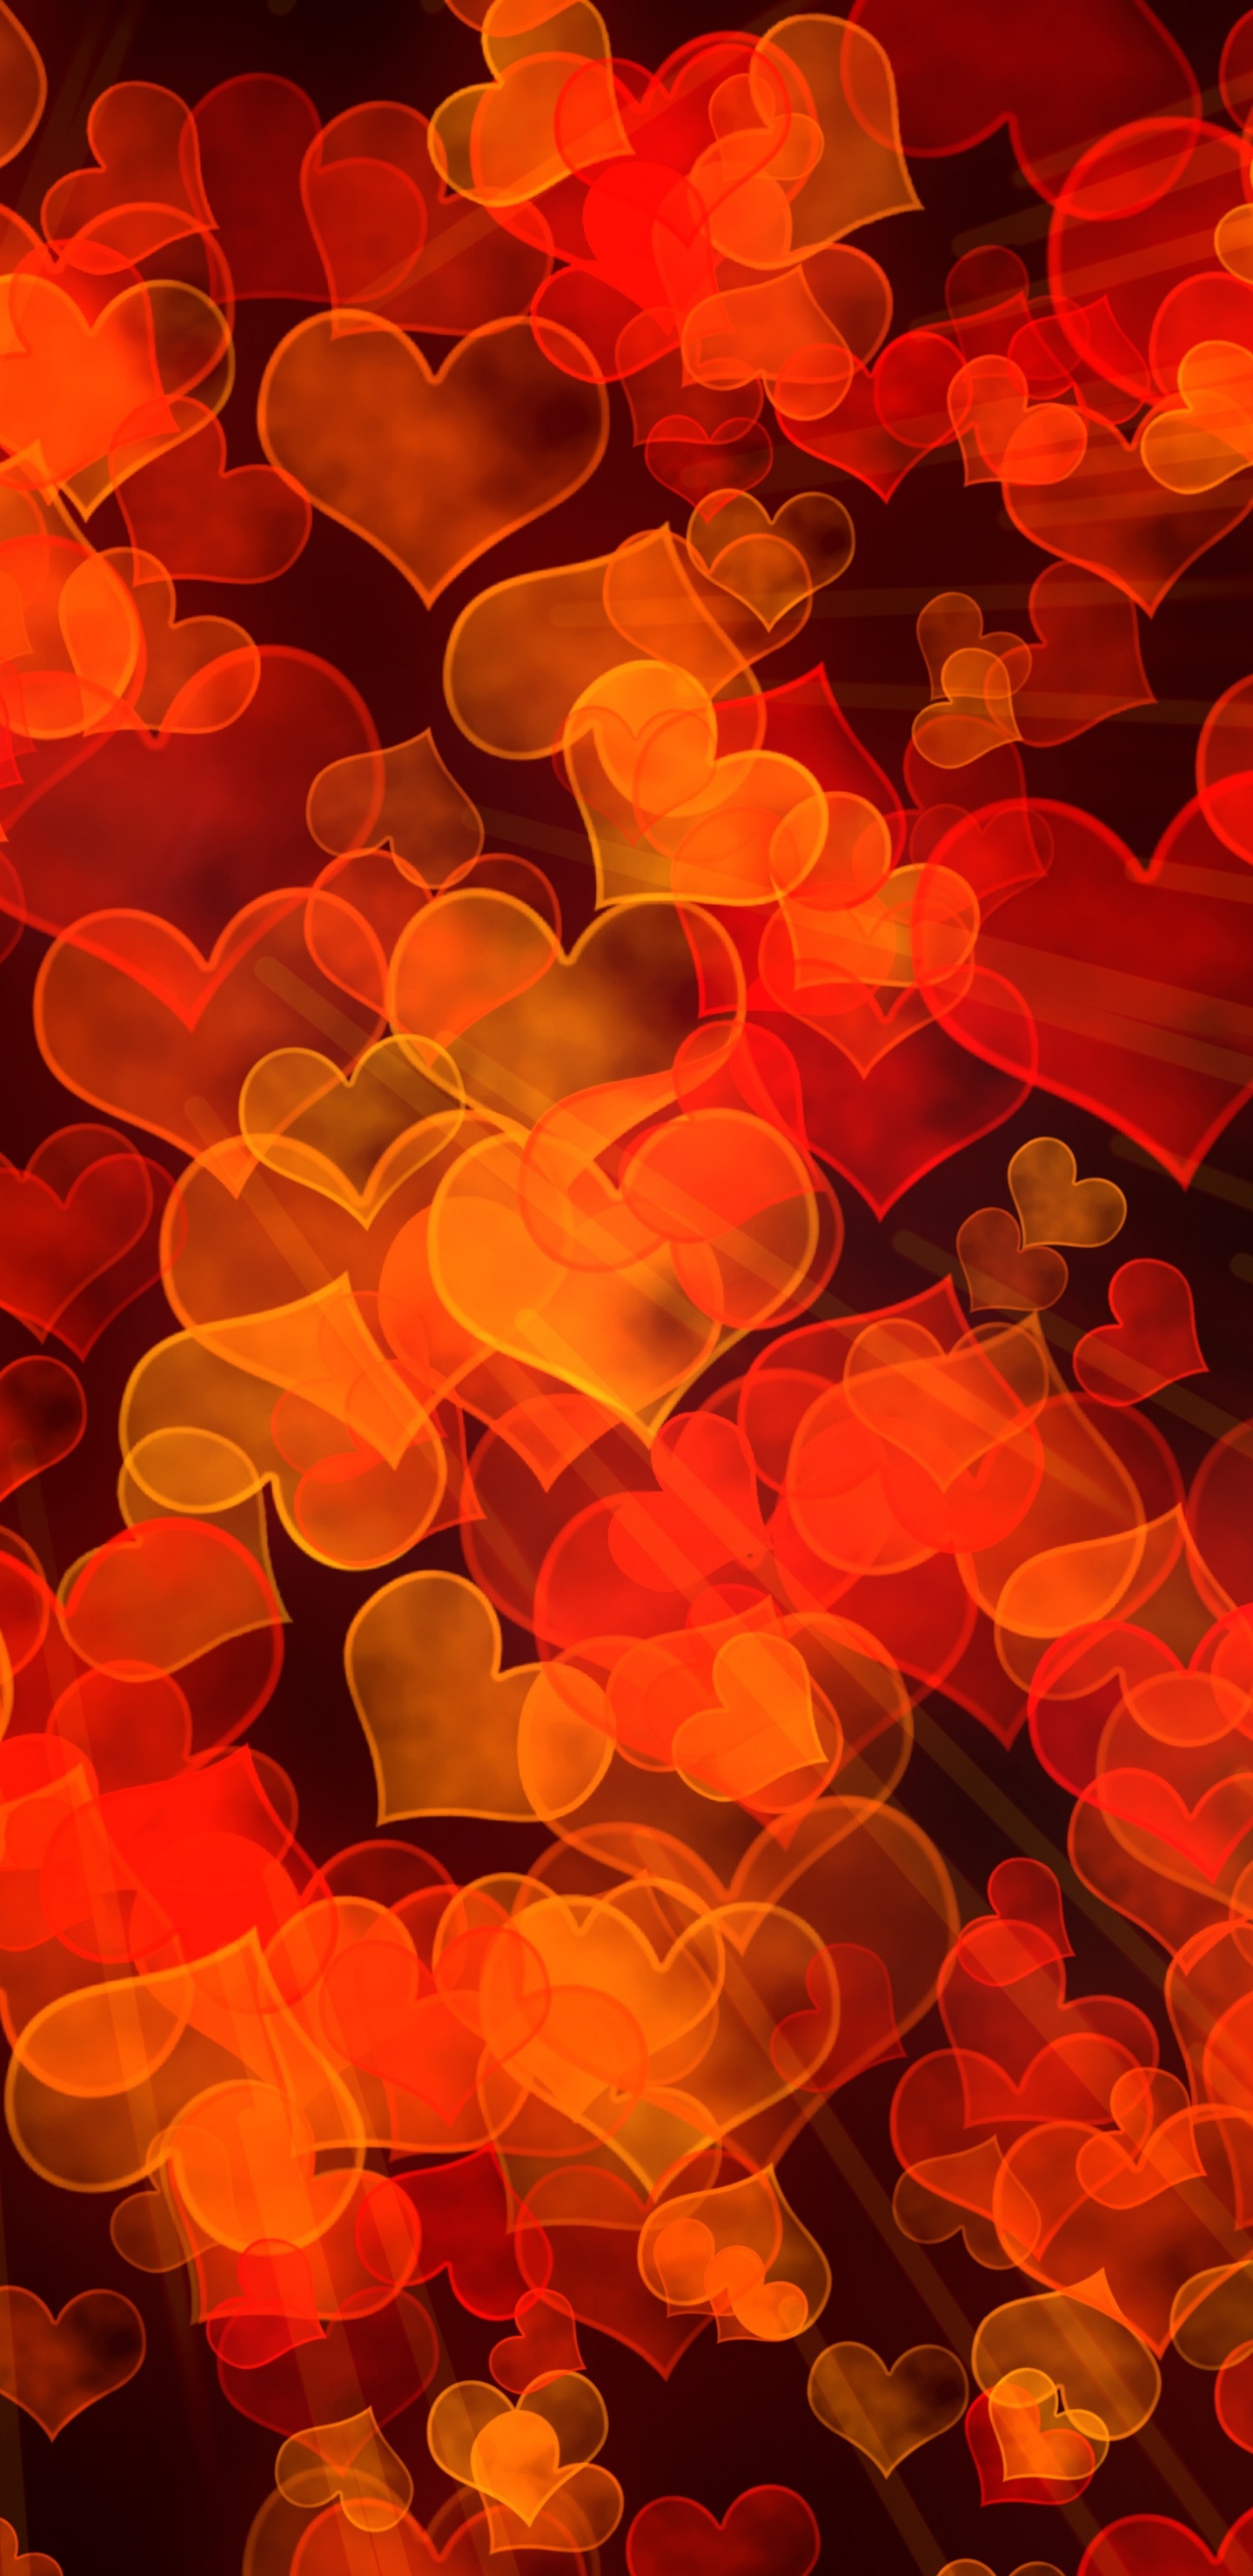 Orange, Heart, Yellow, Petal, Vector Graphics. Wallpaper in 1440x2960 Resolution